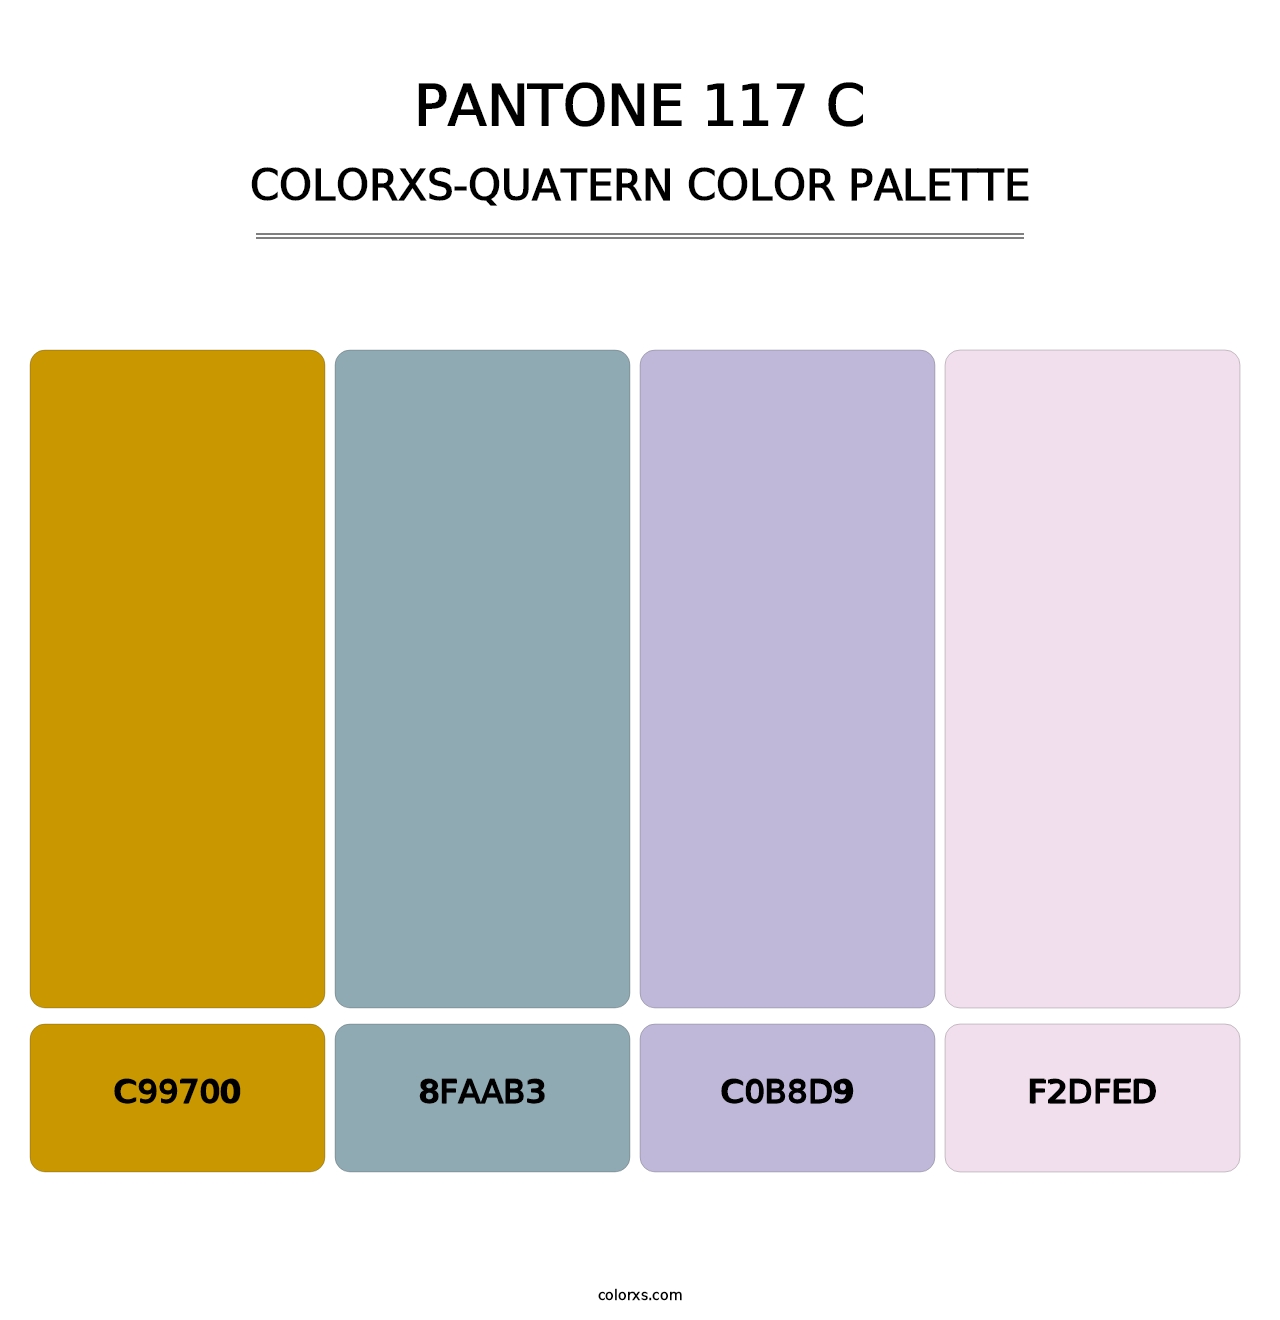 PANTONE 117 C - Colorxs Quatern Palette